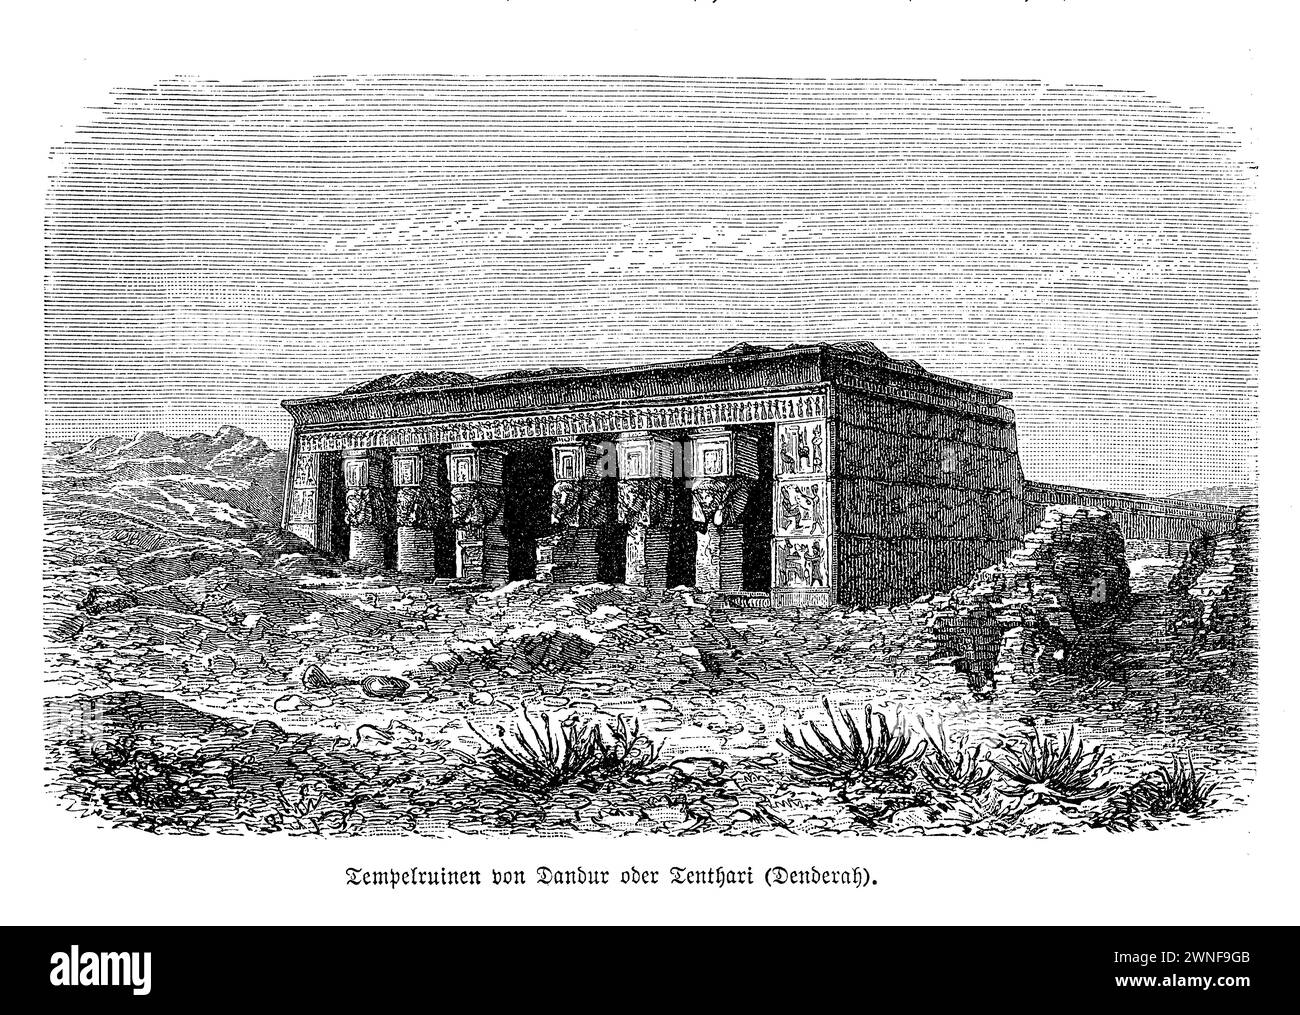 Il complesso del Tempio di Dendera, con il suo gioiello coronante, il Tempio di Hathor, si erge come una testimonianza del genio architettonico e della profondità spirituale degli antichi Egizi. Situato sulla sponda occidentale del Nilo, questo splendido tempio è dedicato a Hathor, incarnando l'amore, la bellezza e la cura materna. Adornato da intricati geroglifici, raffigurazioni celesti e colonne colossali, il tempio funge da porta di accesso per comprendere il ricco arazzo dell'antica religione e cosmologia egizia. Foto Stock